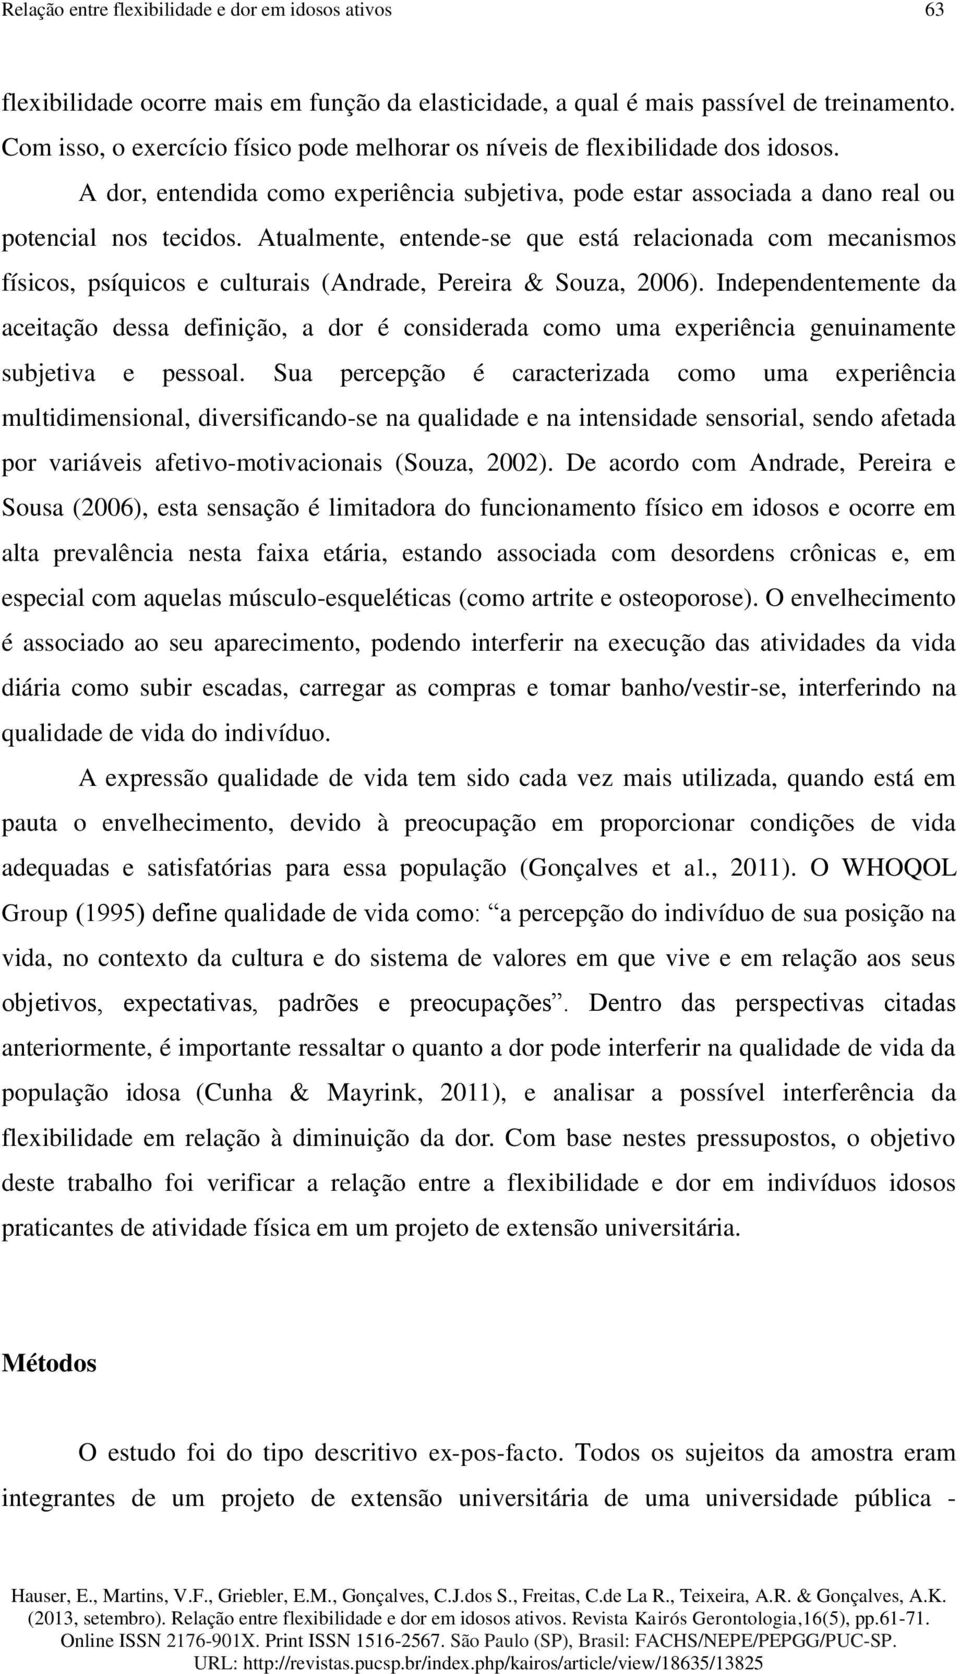 Atualmente, entende-se que está relacionada com mecanismos físicos, psíquicos e culturais (Andrade, Pereira & Souza, 2006).